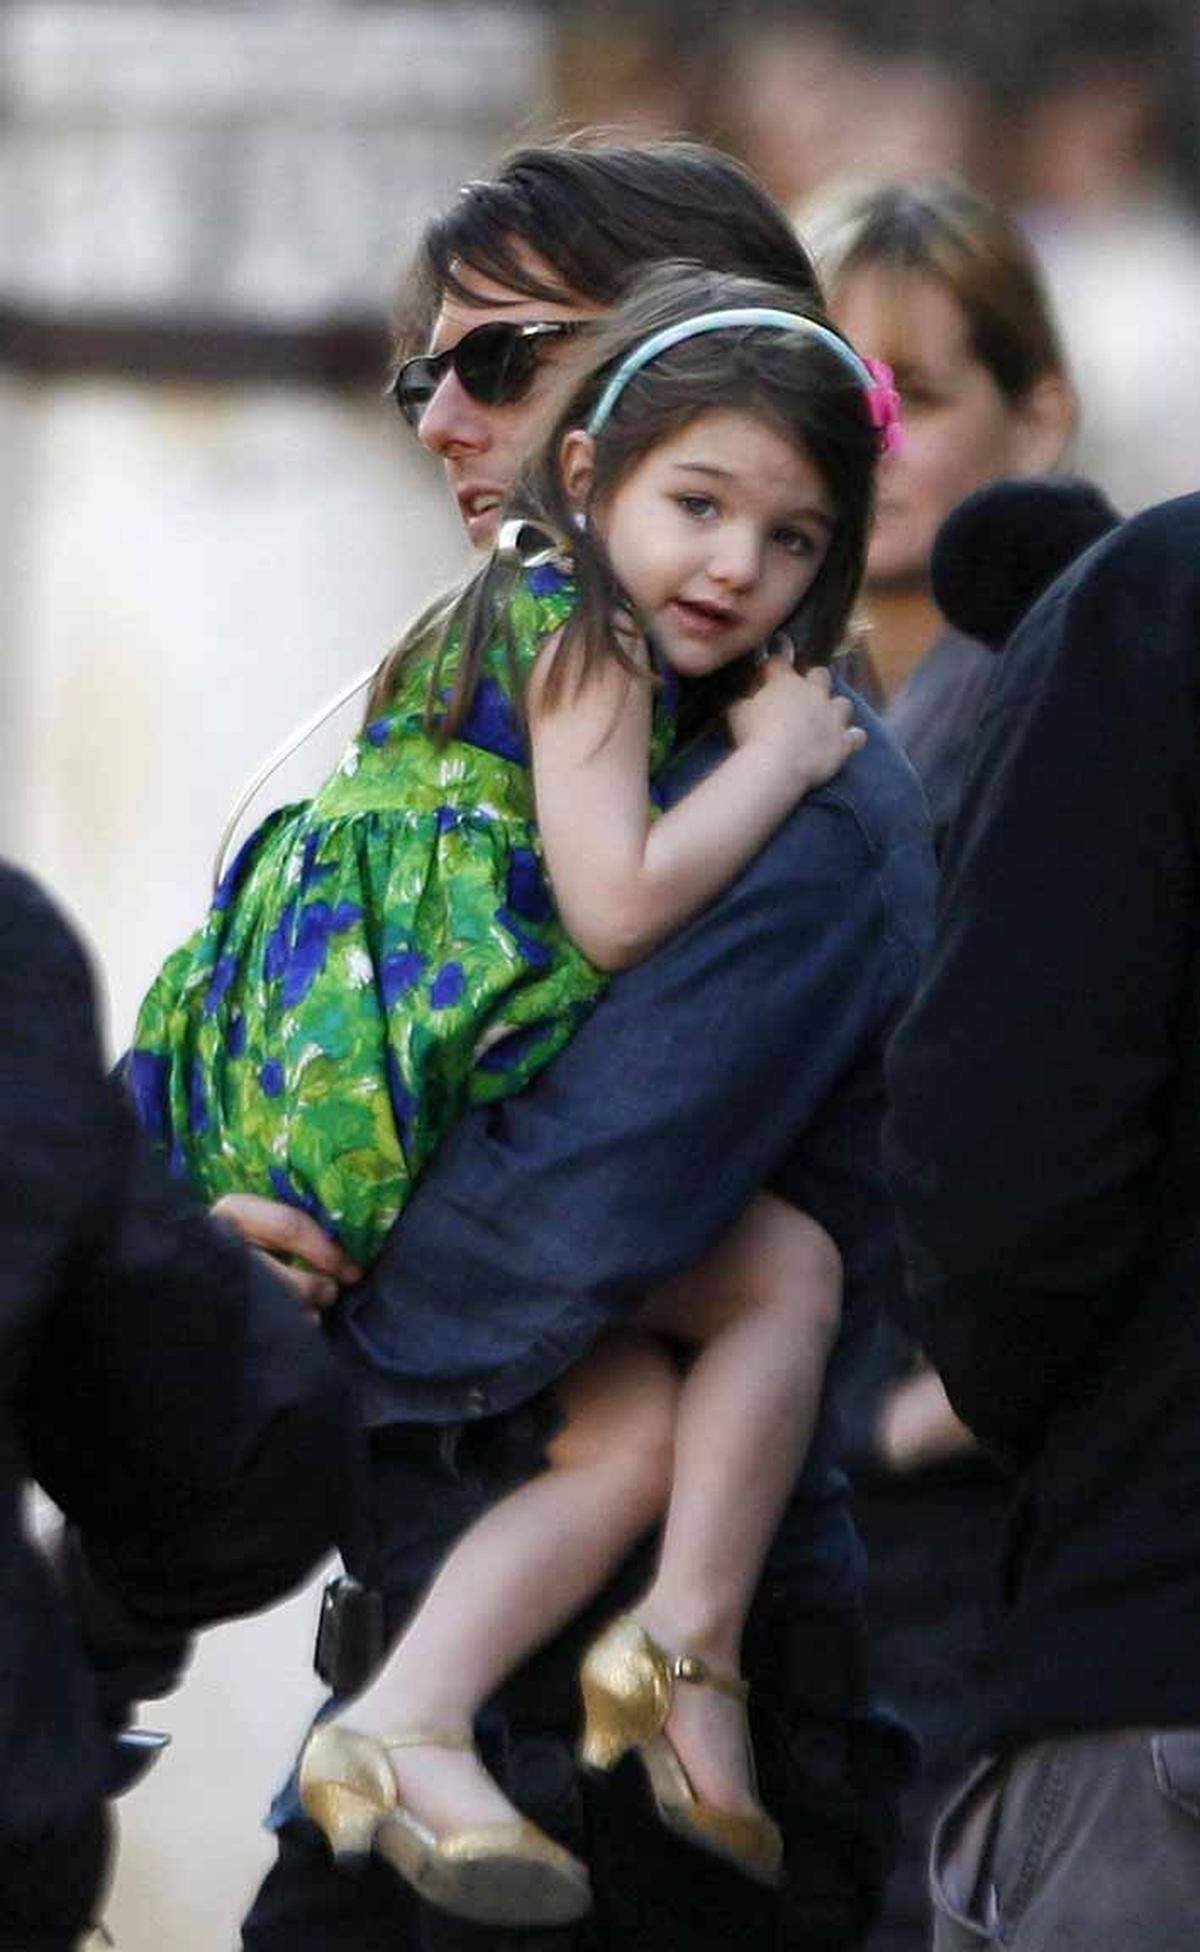 Pumps trug Suri Cruise, die Tochter von Tom Cruise und Katie Holmes bereits als Dreijährige. Sie landete auf der Rangliste der Umfrage, an der Eltern teilgenommen haben, auf dem vierten Platz.